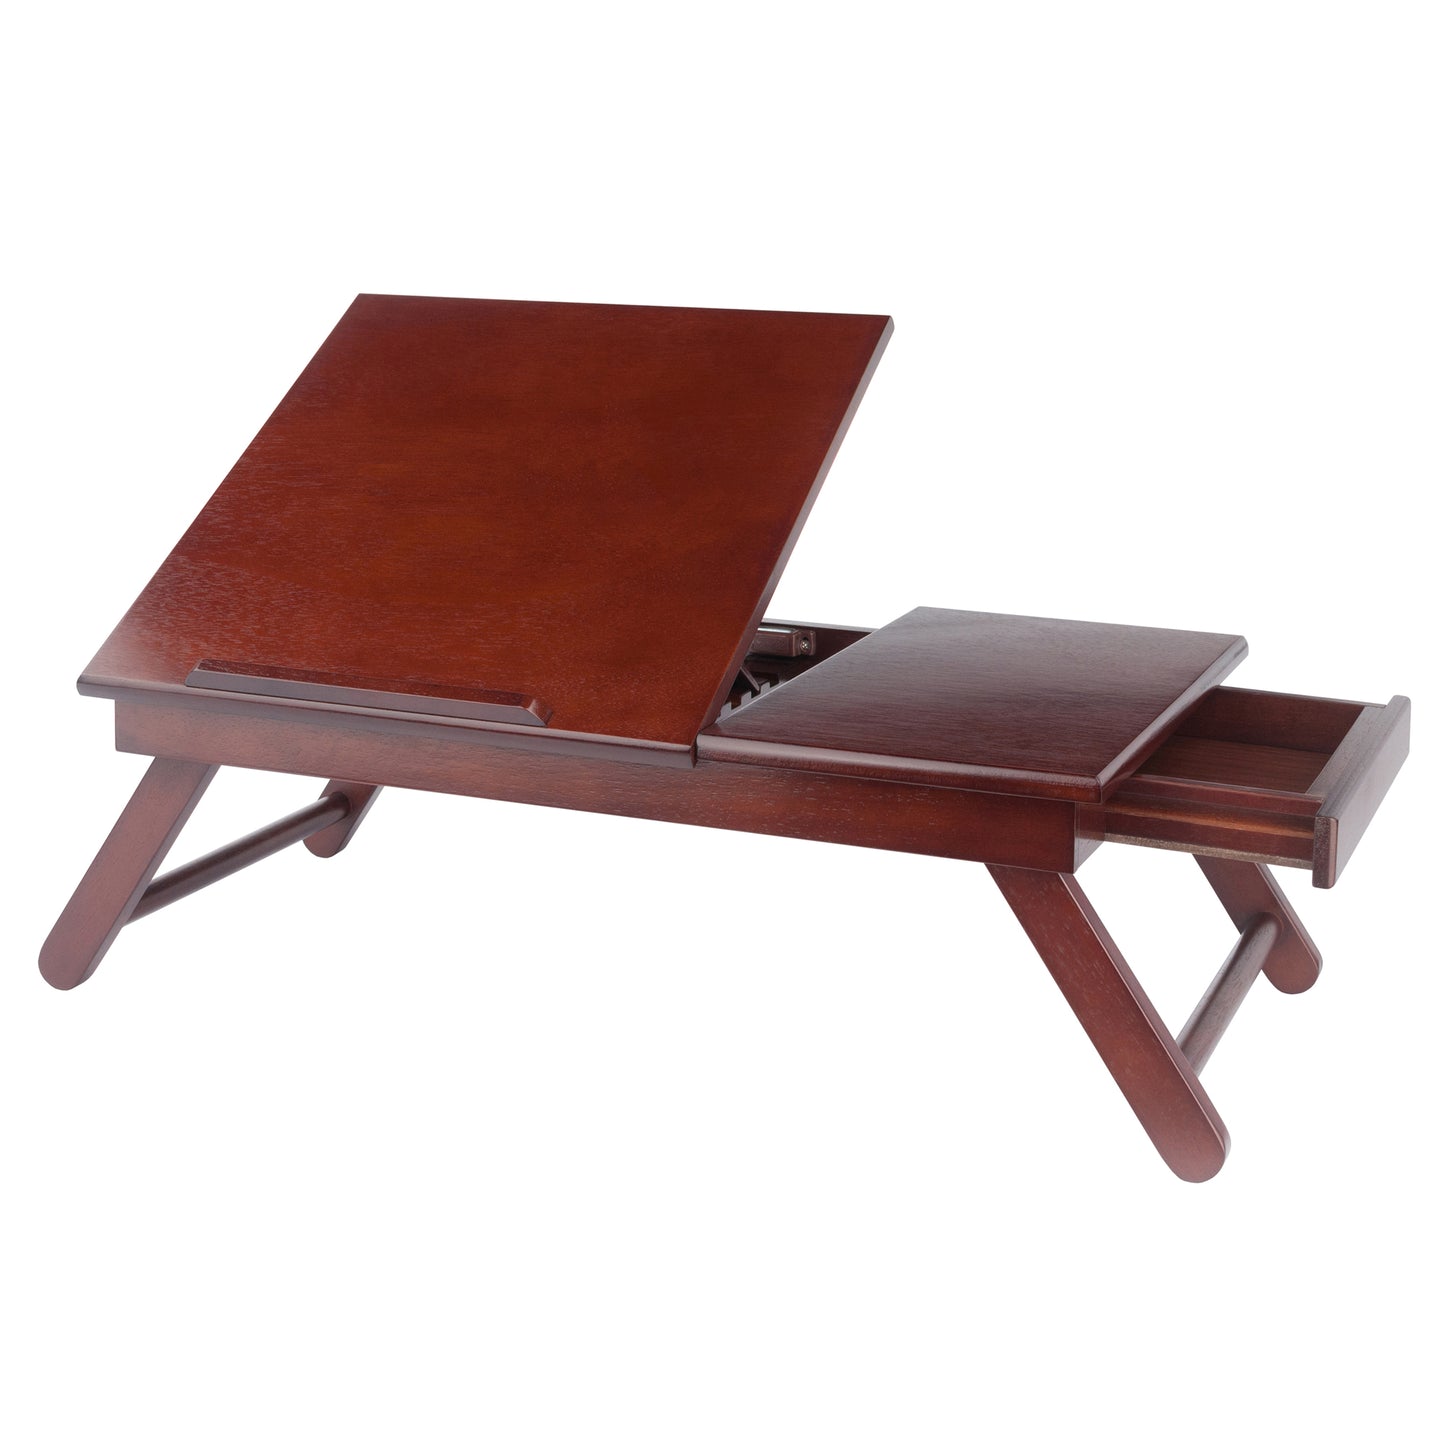 Alden Flip Top Desk, Tray with Drawer, Walnut